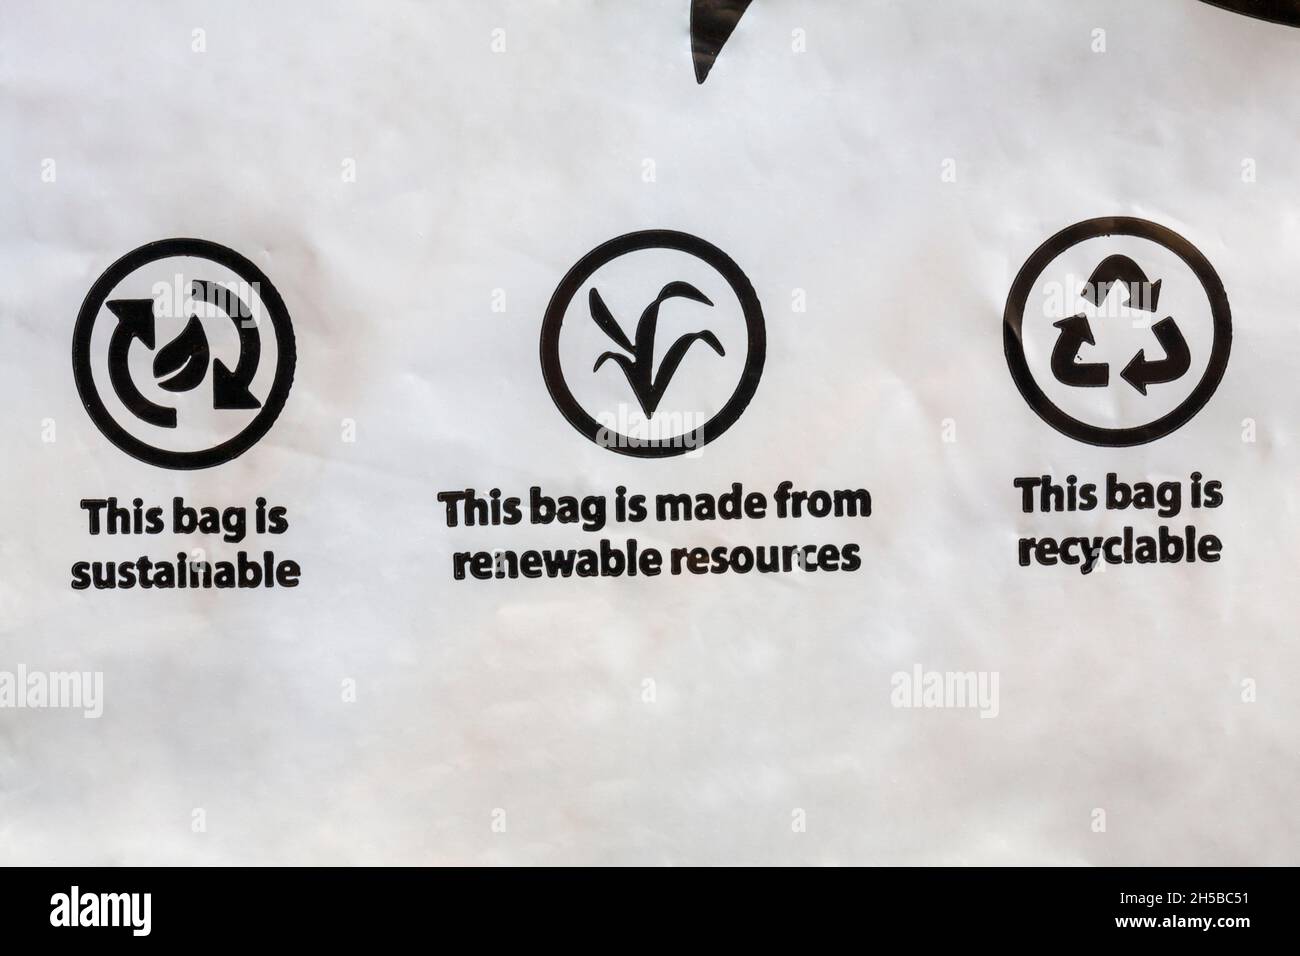 Diese Tasche ist nachhaltig, diese Tasche ist aus nachwachsenden Rohstoffen hergestellt, diese Tasche ist recycelbar - Detail auf Verpackungsbeutel, recycelbare Verpackung Stockfoto